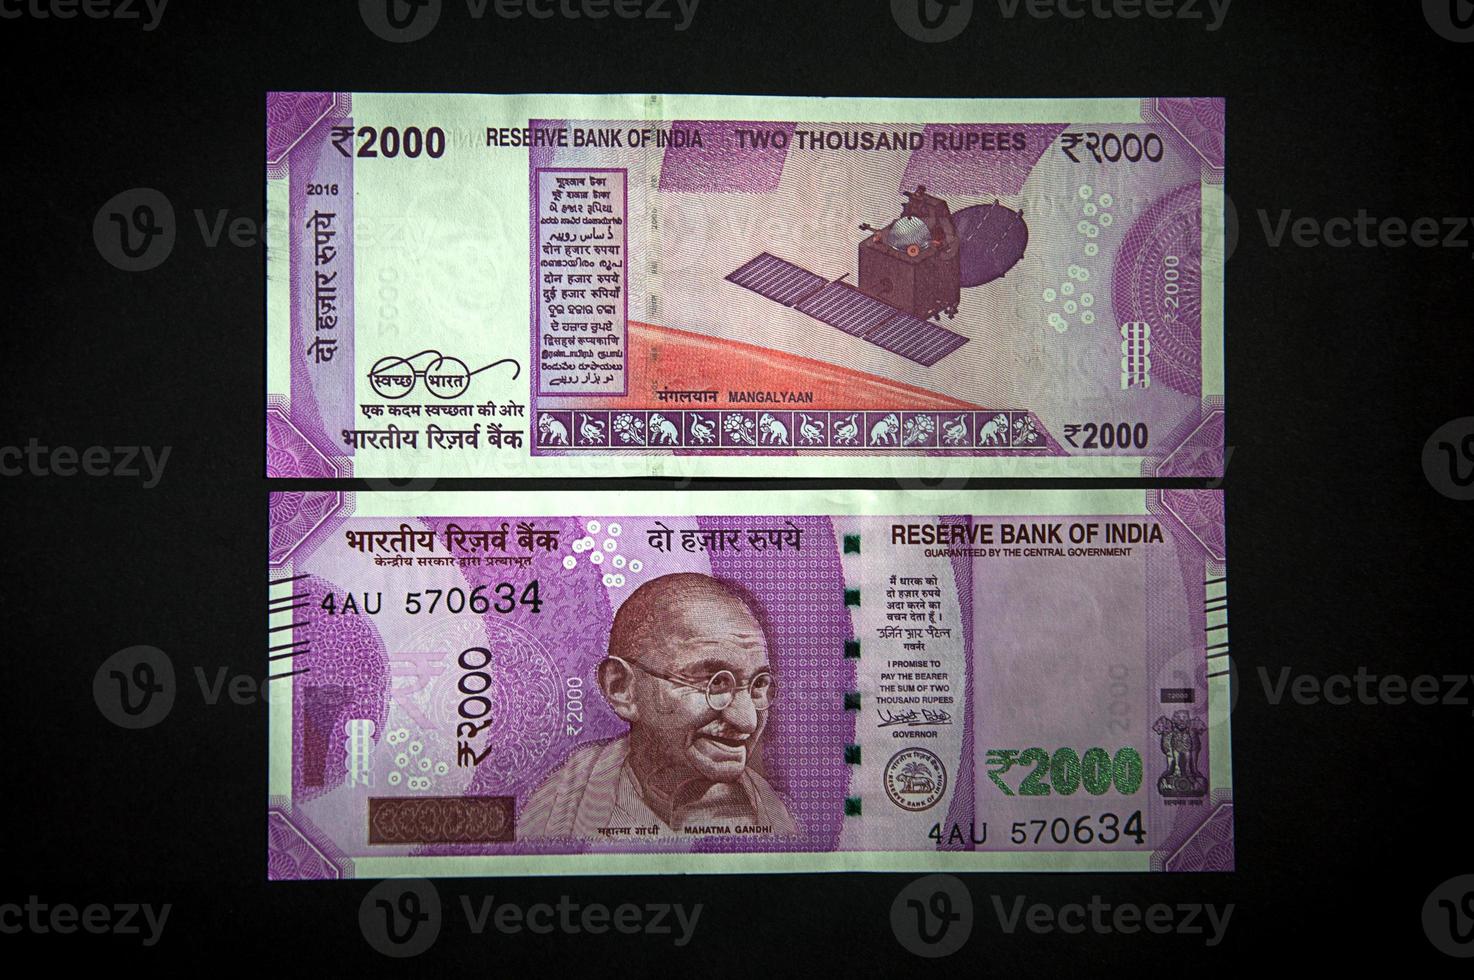 nieuwe Indiase valuta van rs.2000 op zwarte achtergrond. gepubliceerd op 9 november 2016. foto